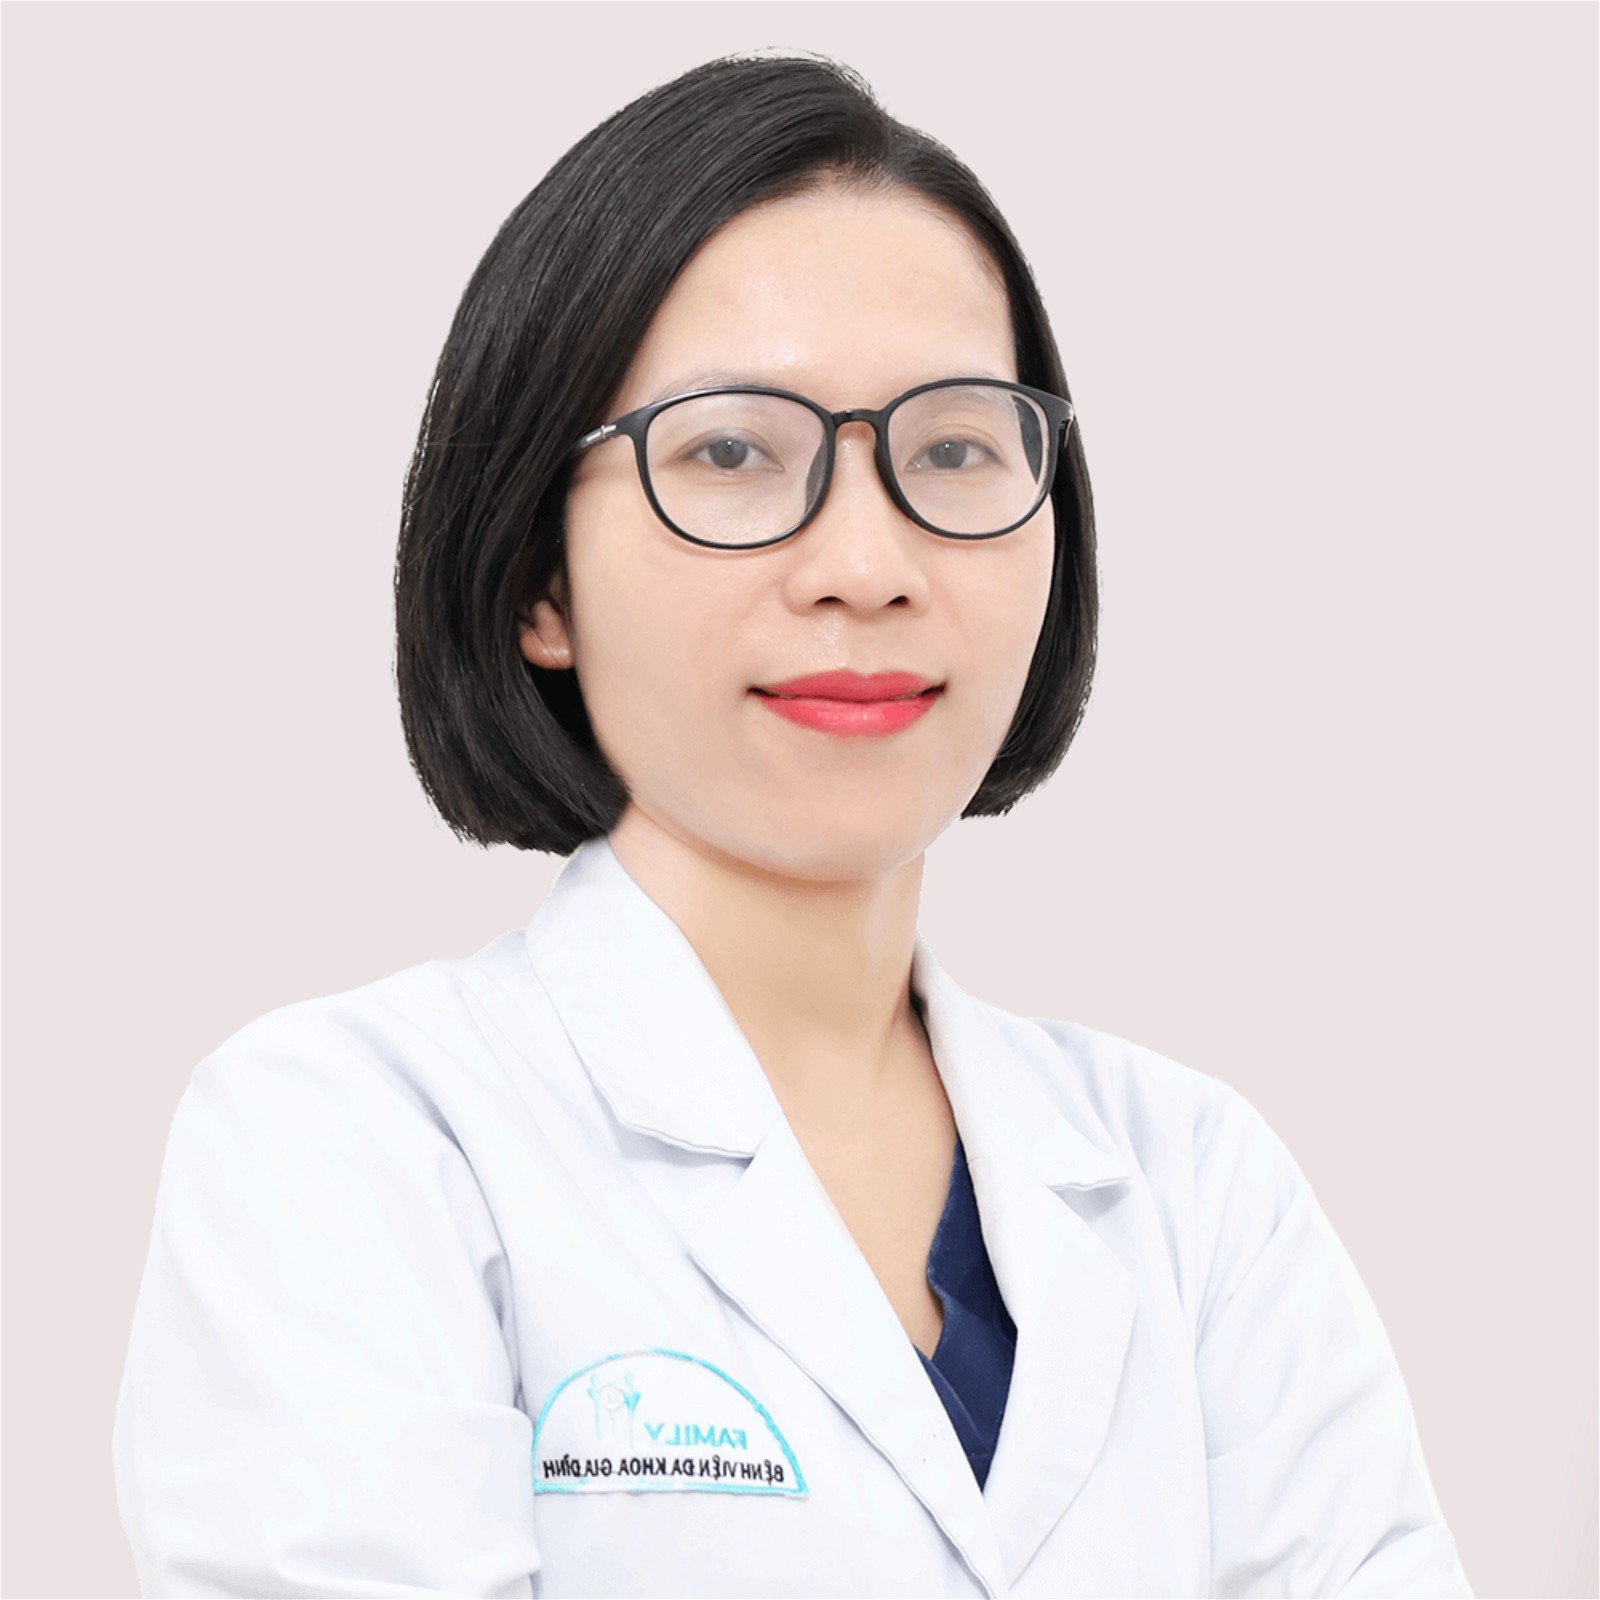 Thạc sĩ Bác sĩ Nguyễn Thị Thanh Loan